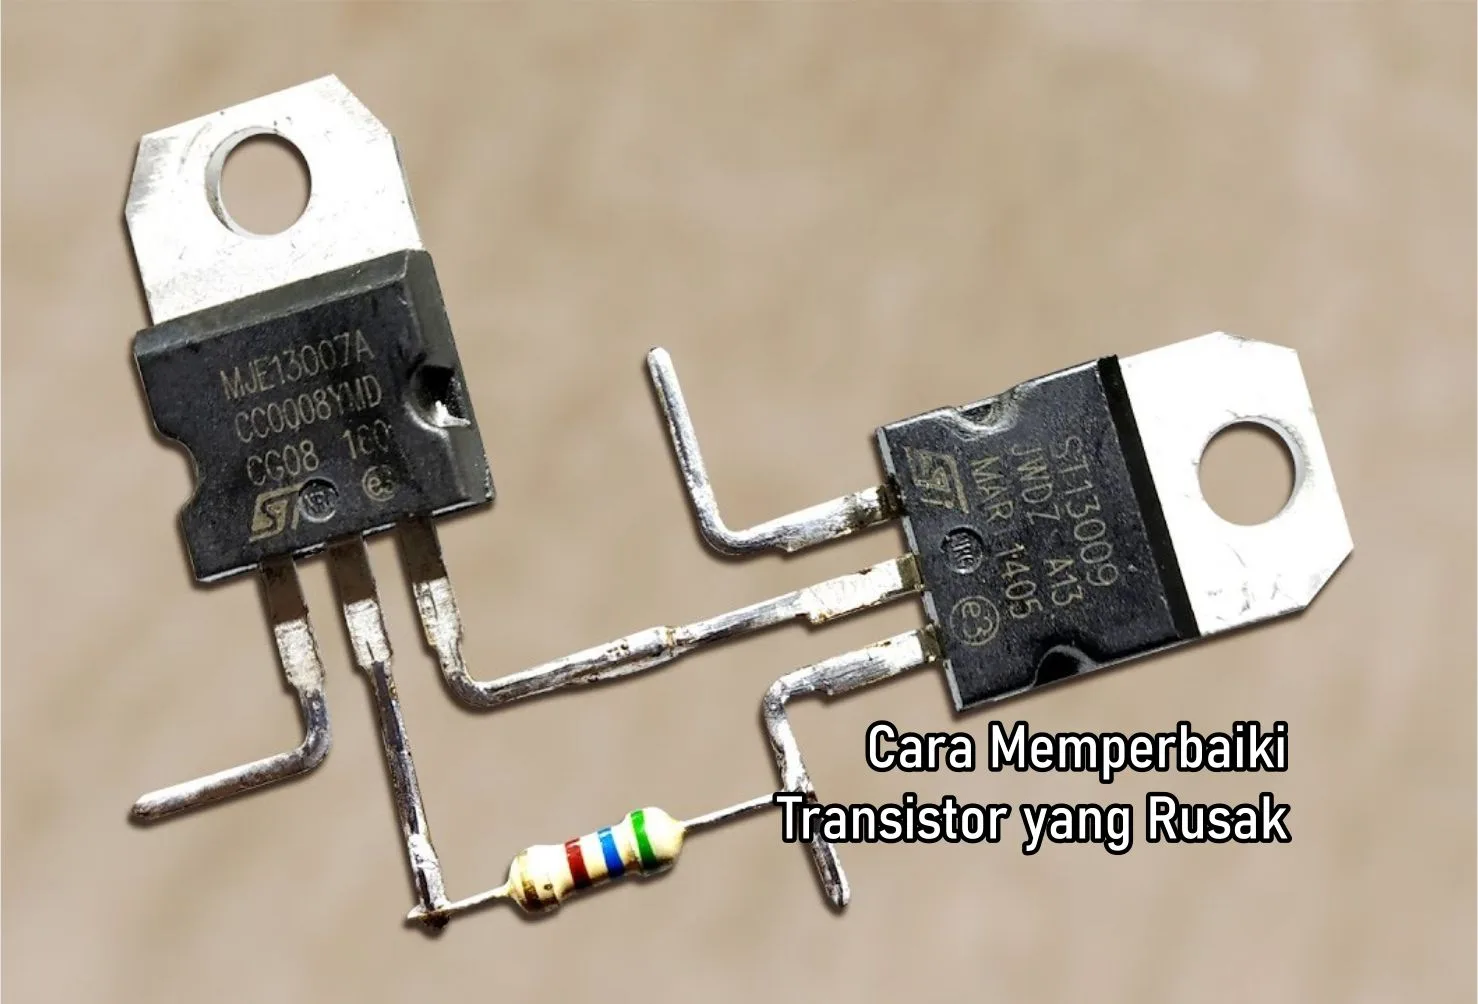 Cara Memperbaiki Transistor yang Rusak